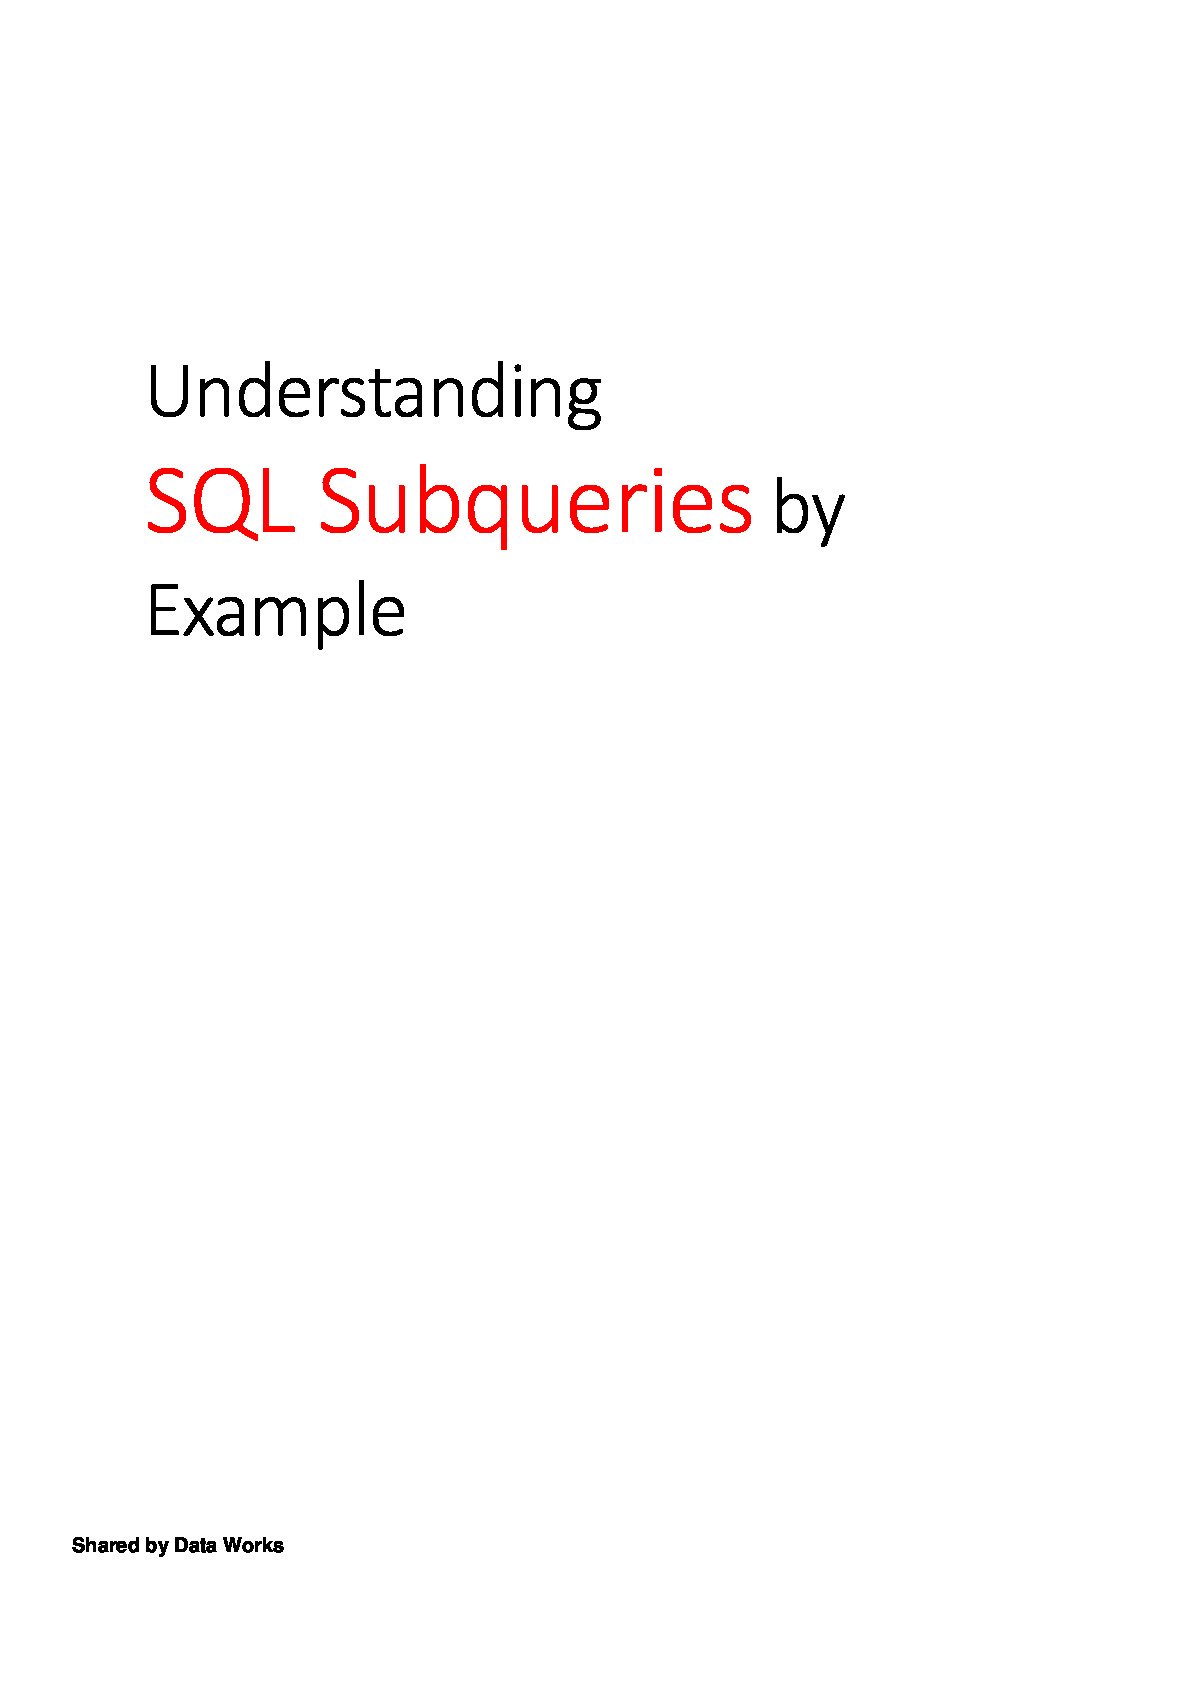 SQL-Subqueries